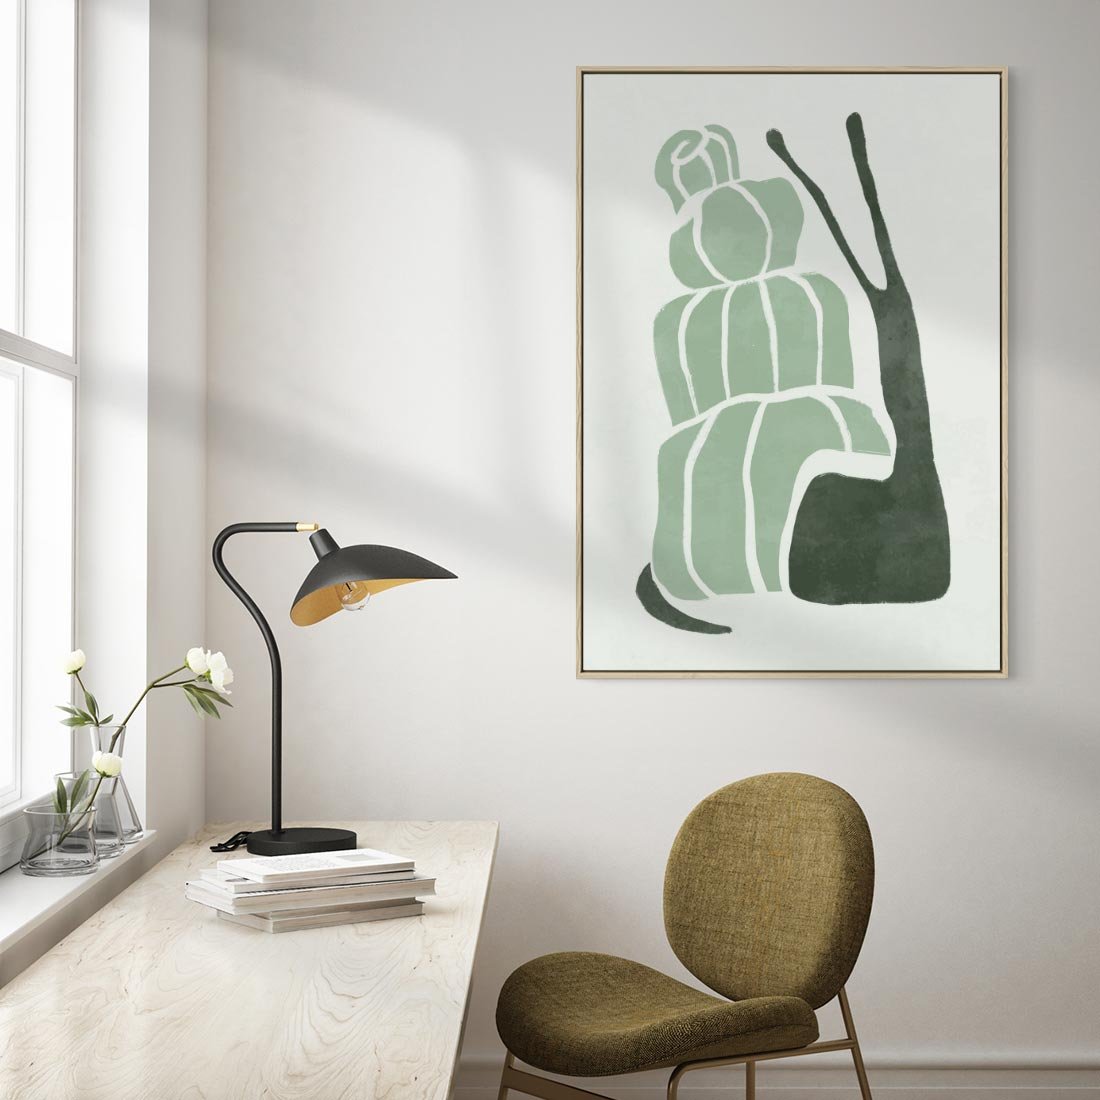 Obraz w ramie 50x70 - Zielona Równowaga - abstrakcyjny zielony ślimak, skandynawski design - rama drewno